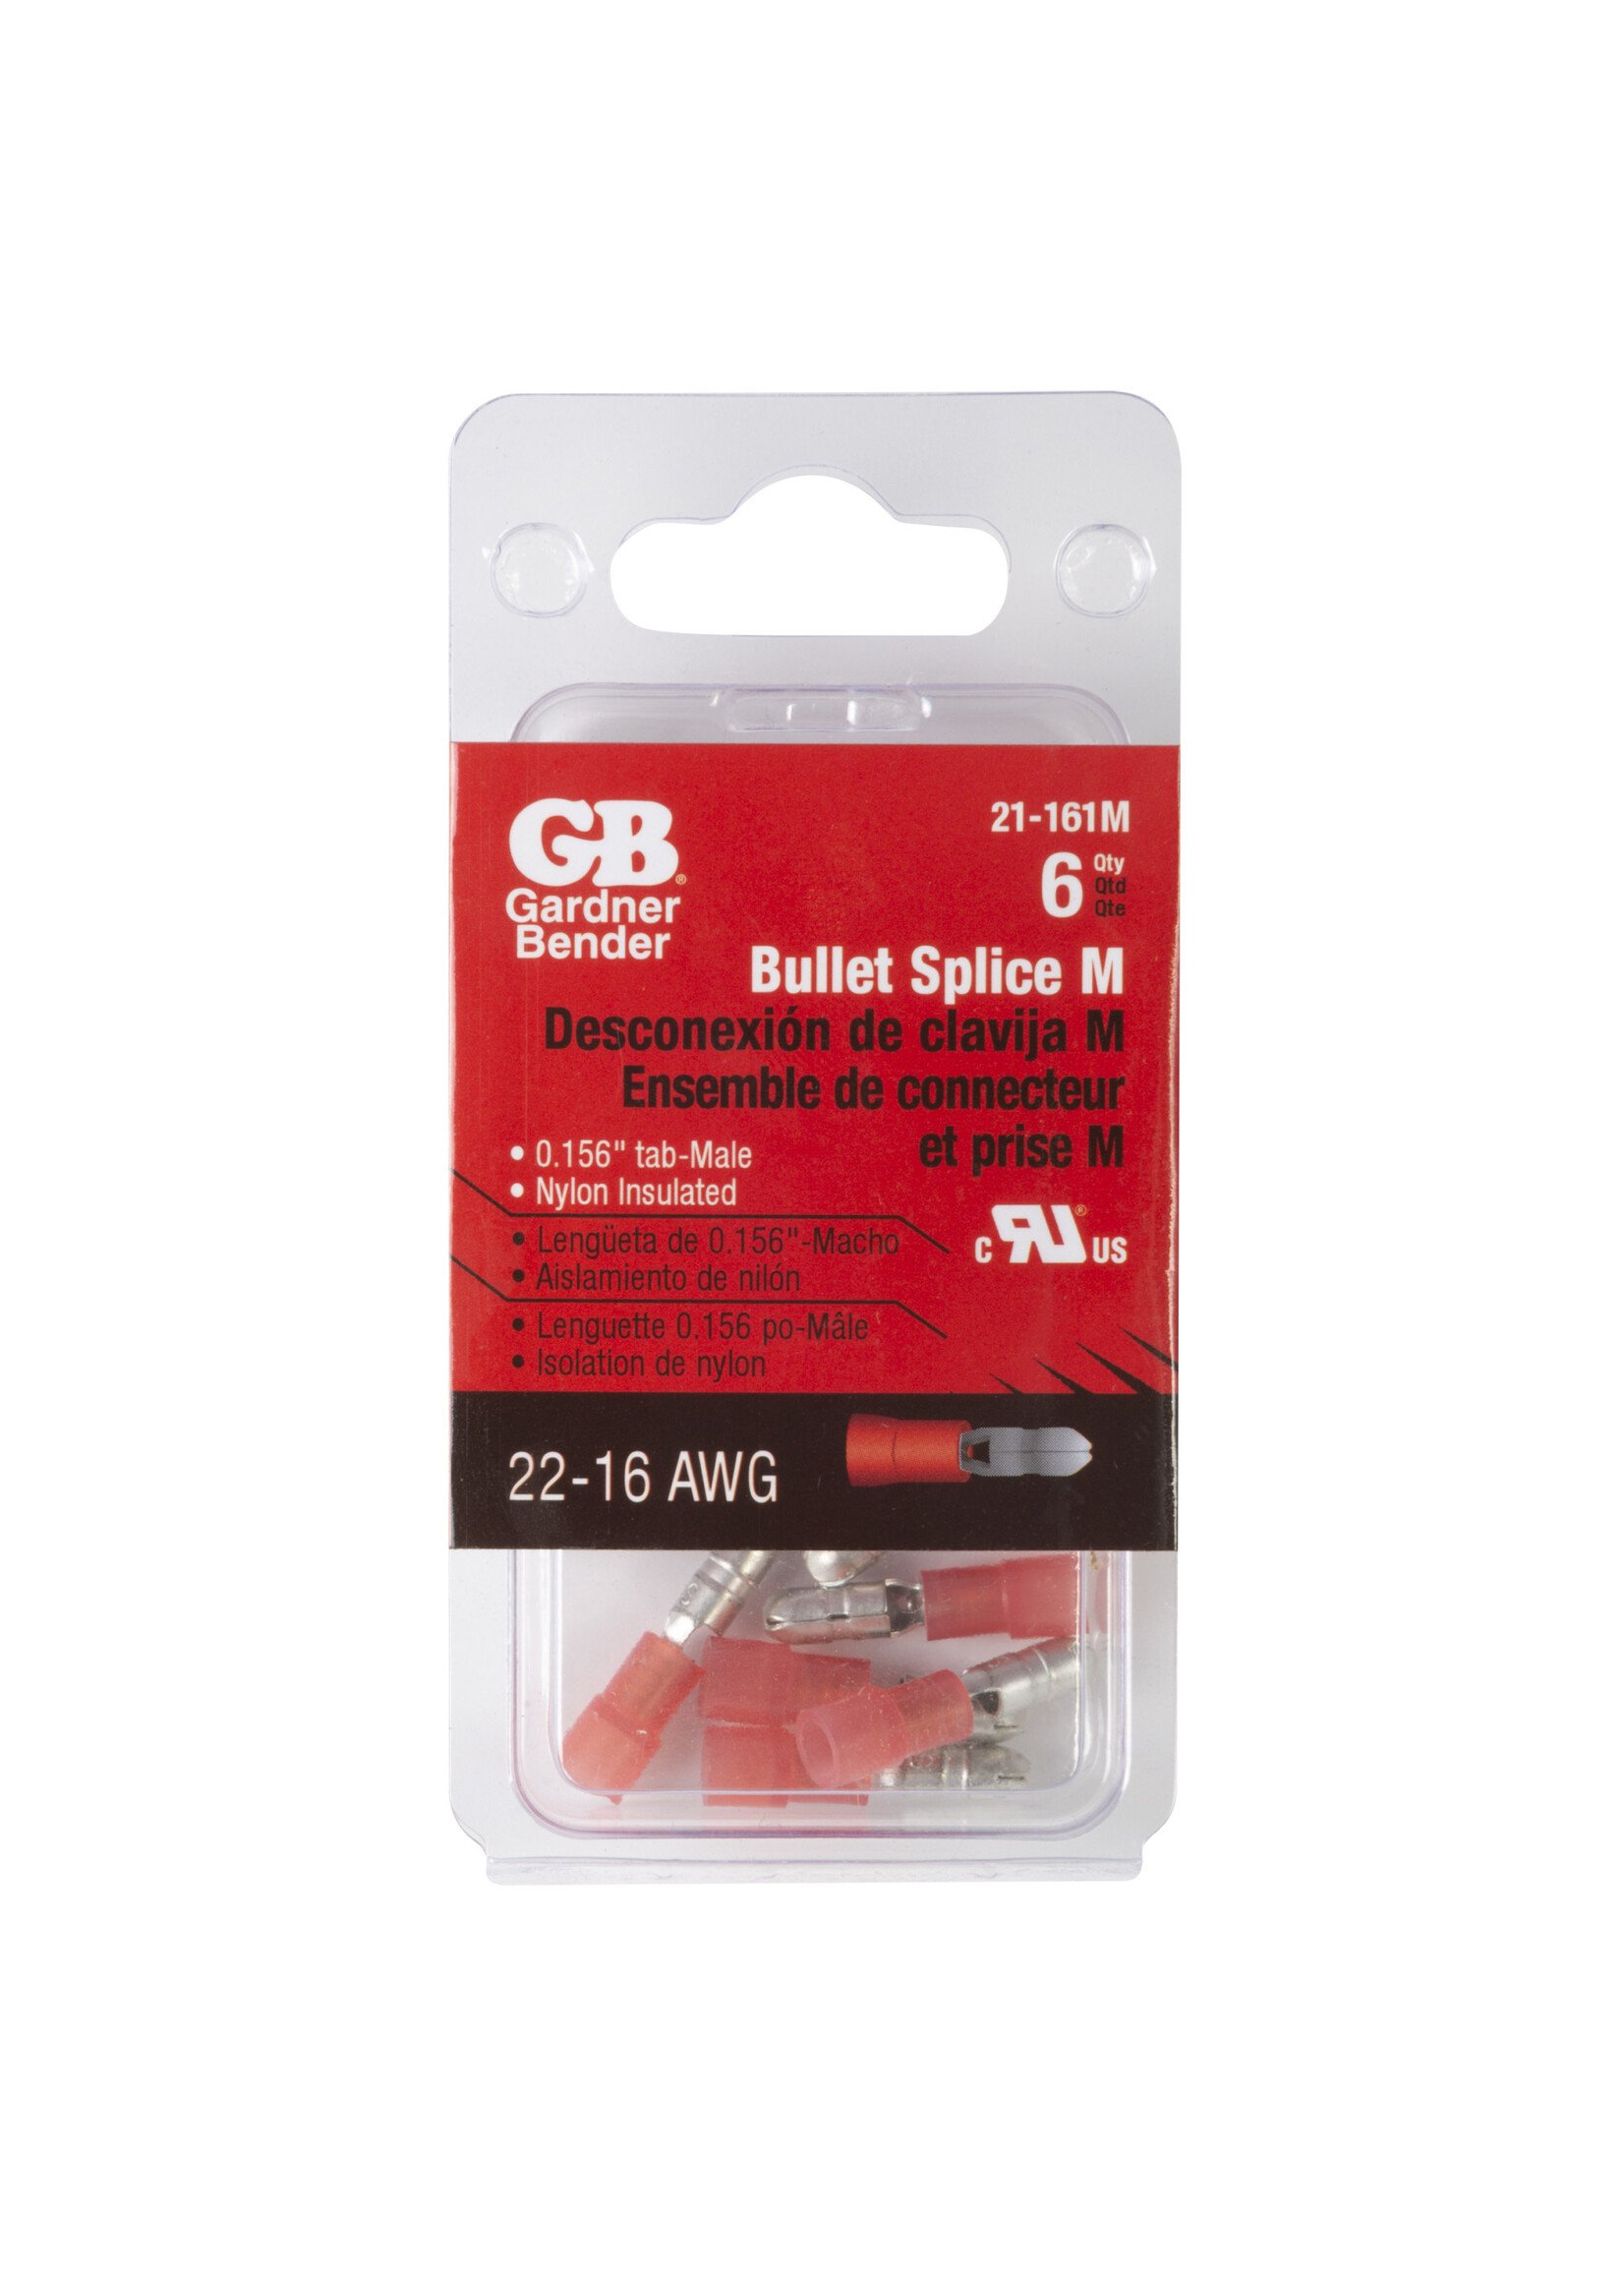 GARDNER BENDER #22-#18 AWG (0.8 mm²) Fully-Insulated Bullet Splice (0.156" Tab) - Male / 21-161M